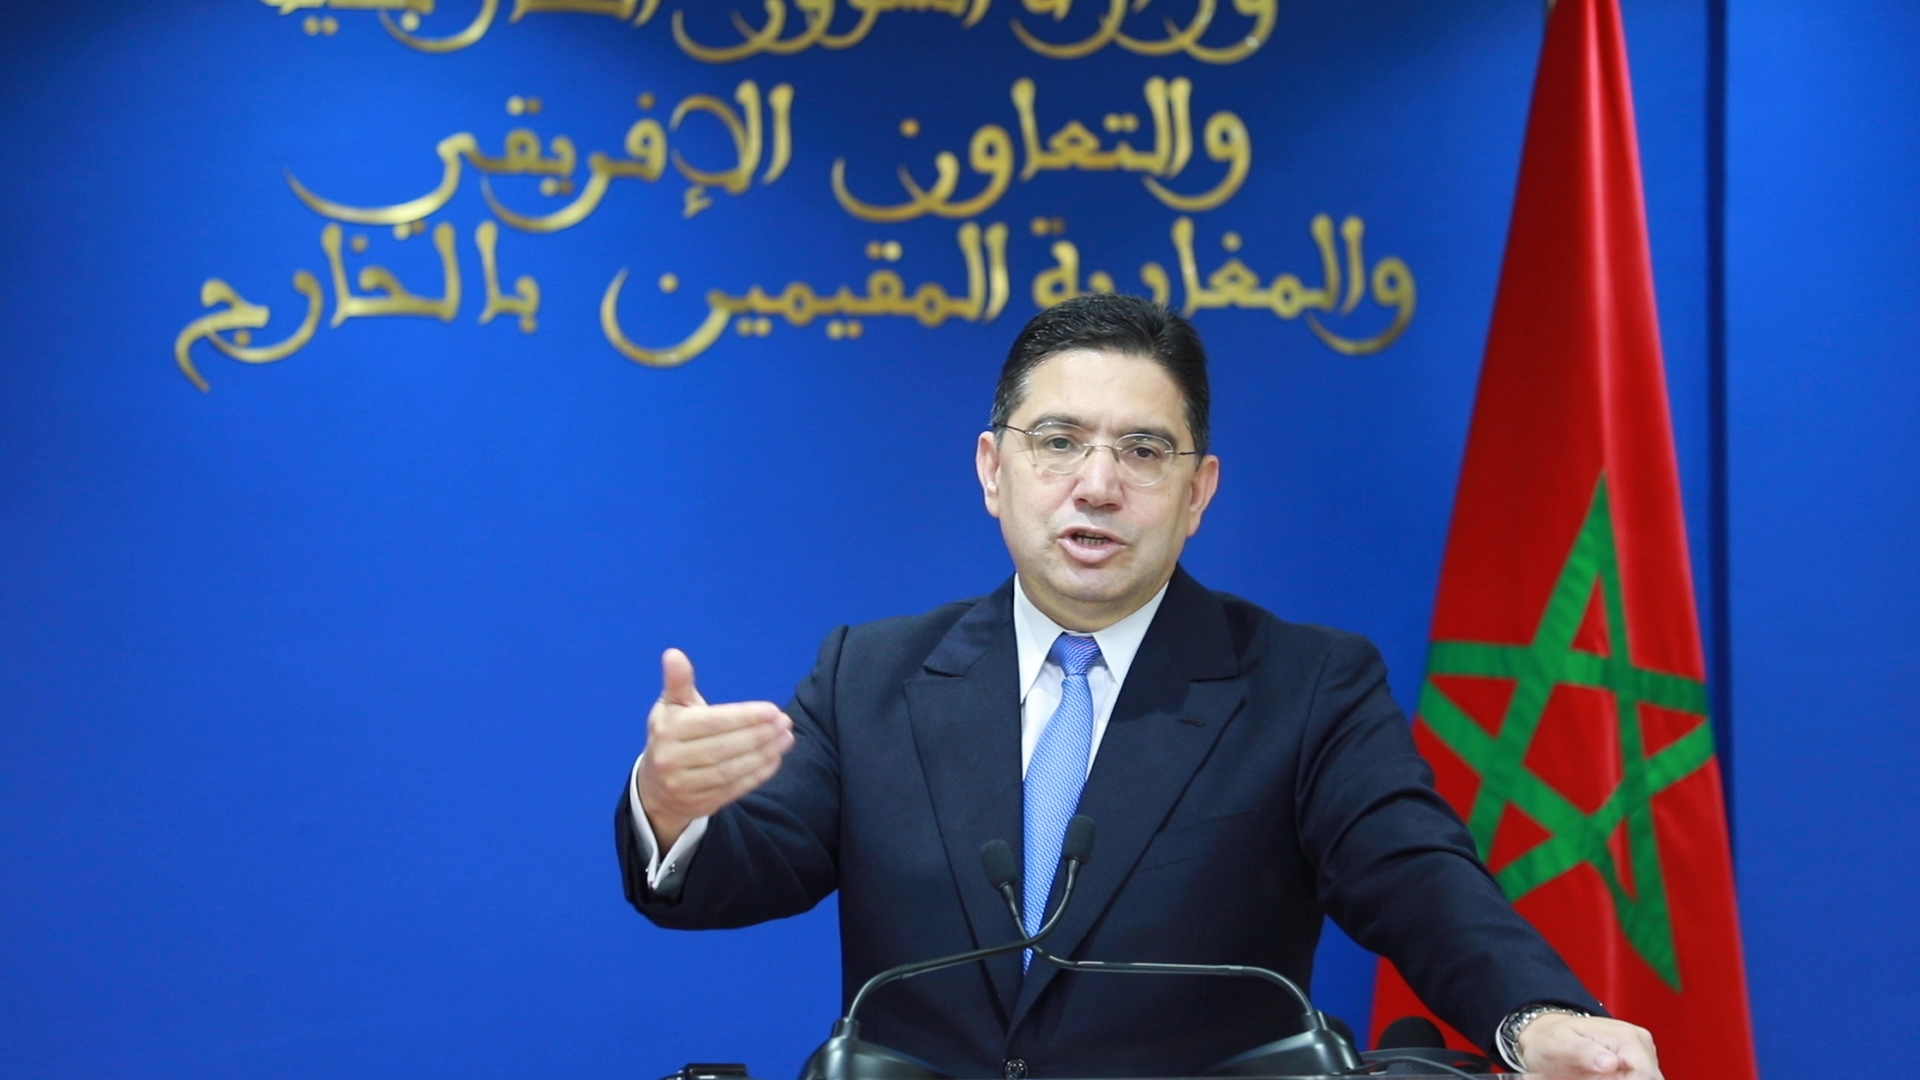 بوريطة: ترؤس المغرب مجلس حقوق الإنسان خير رد على ادعاءات الجزائر وجنوب إفريقيا